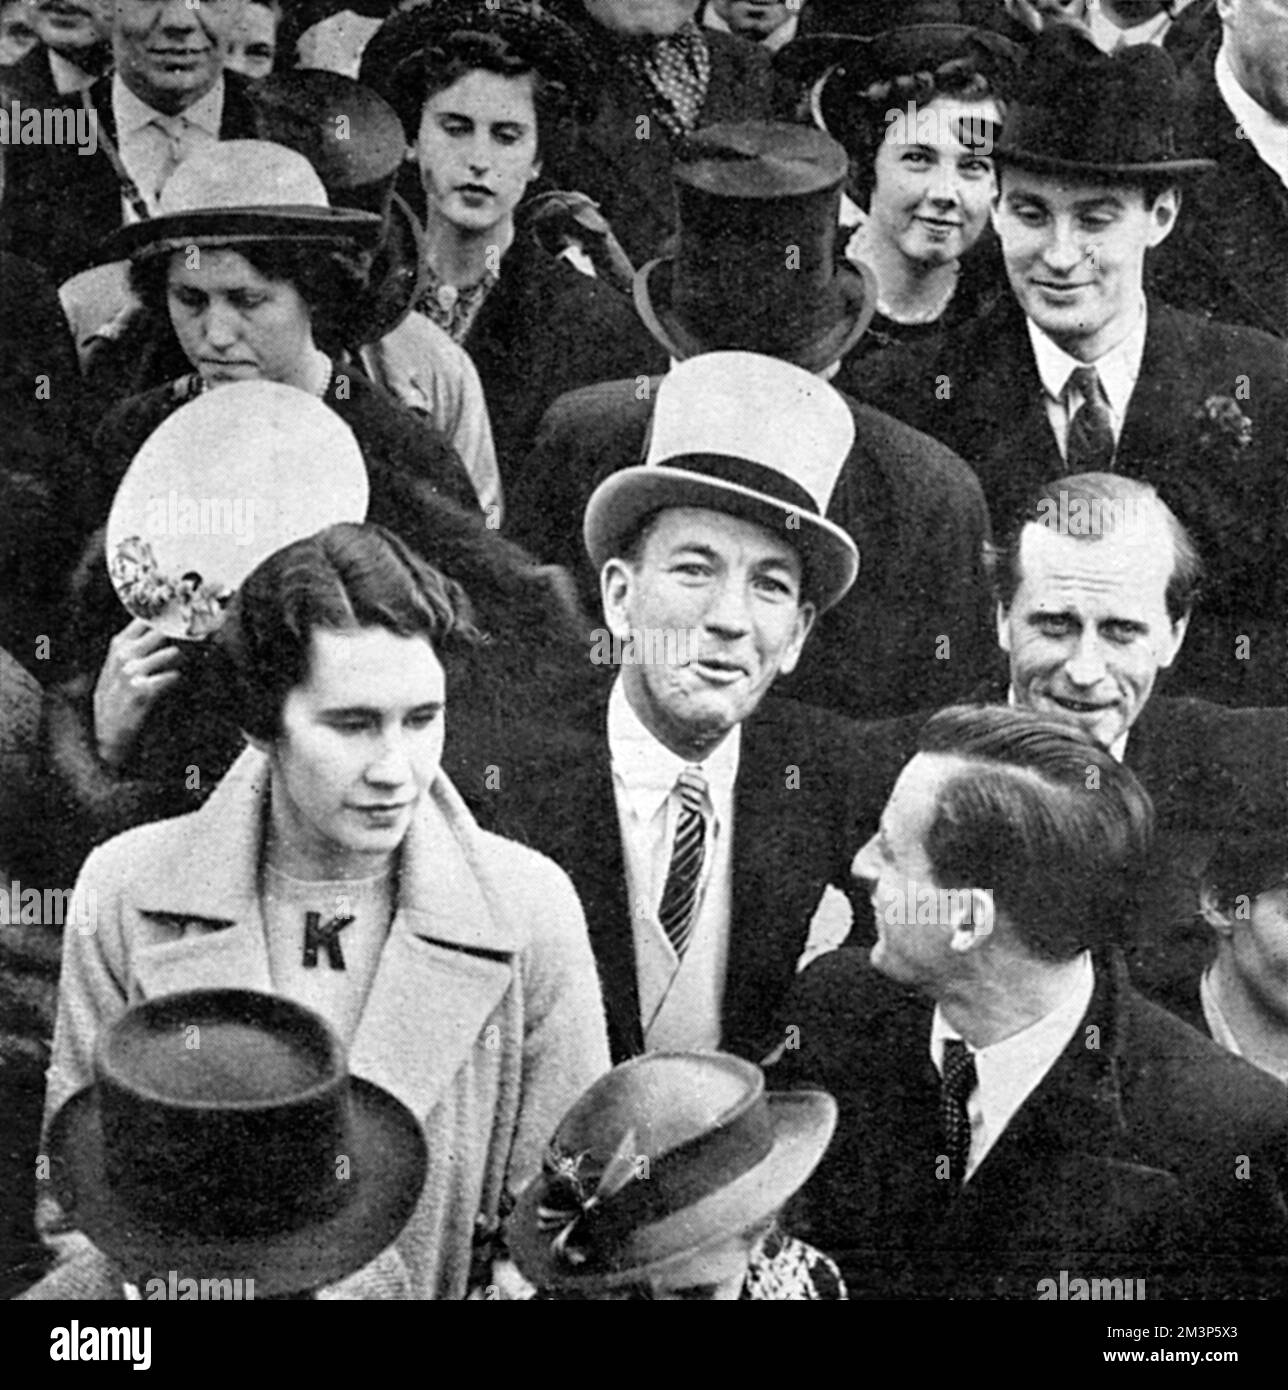 Noel Coward (Sir Noel Peirce Coward, 1899-1973), englischer Schauspieler, Sänger, Dramatiker, regisseur und Komponist mit einem grauen Hut und vor dem Buckingham Palace, wo er am 12. Mai 1937 unter den Zuschauern war, die die Krönungswende von König George VI. Sahen. Datum: 1937 Stockfoto